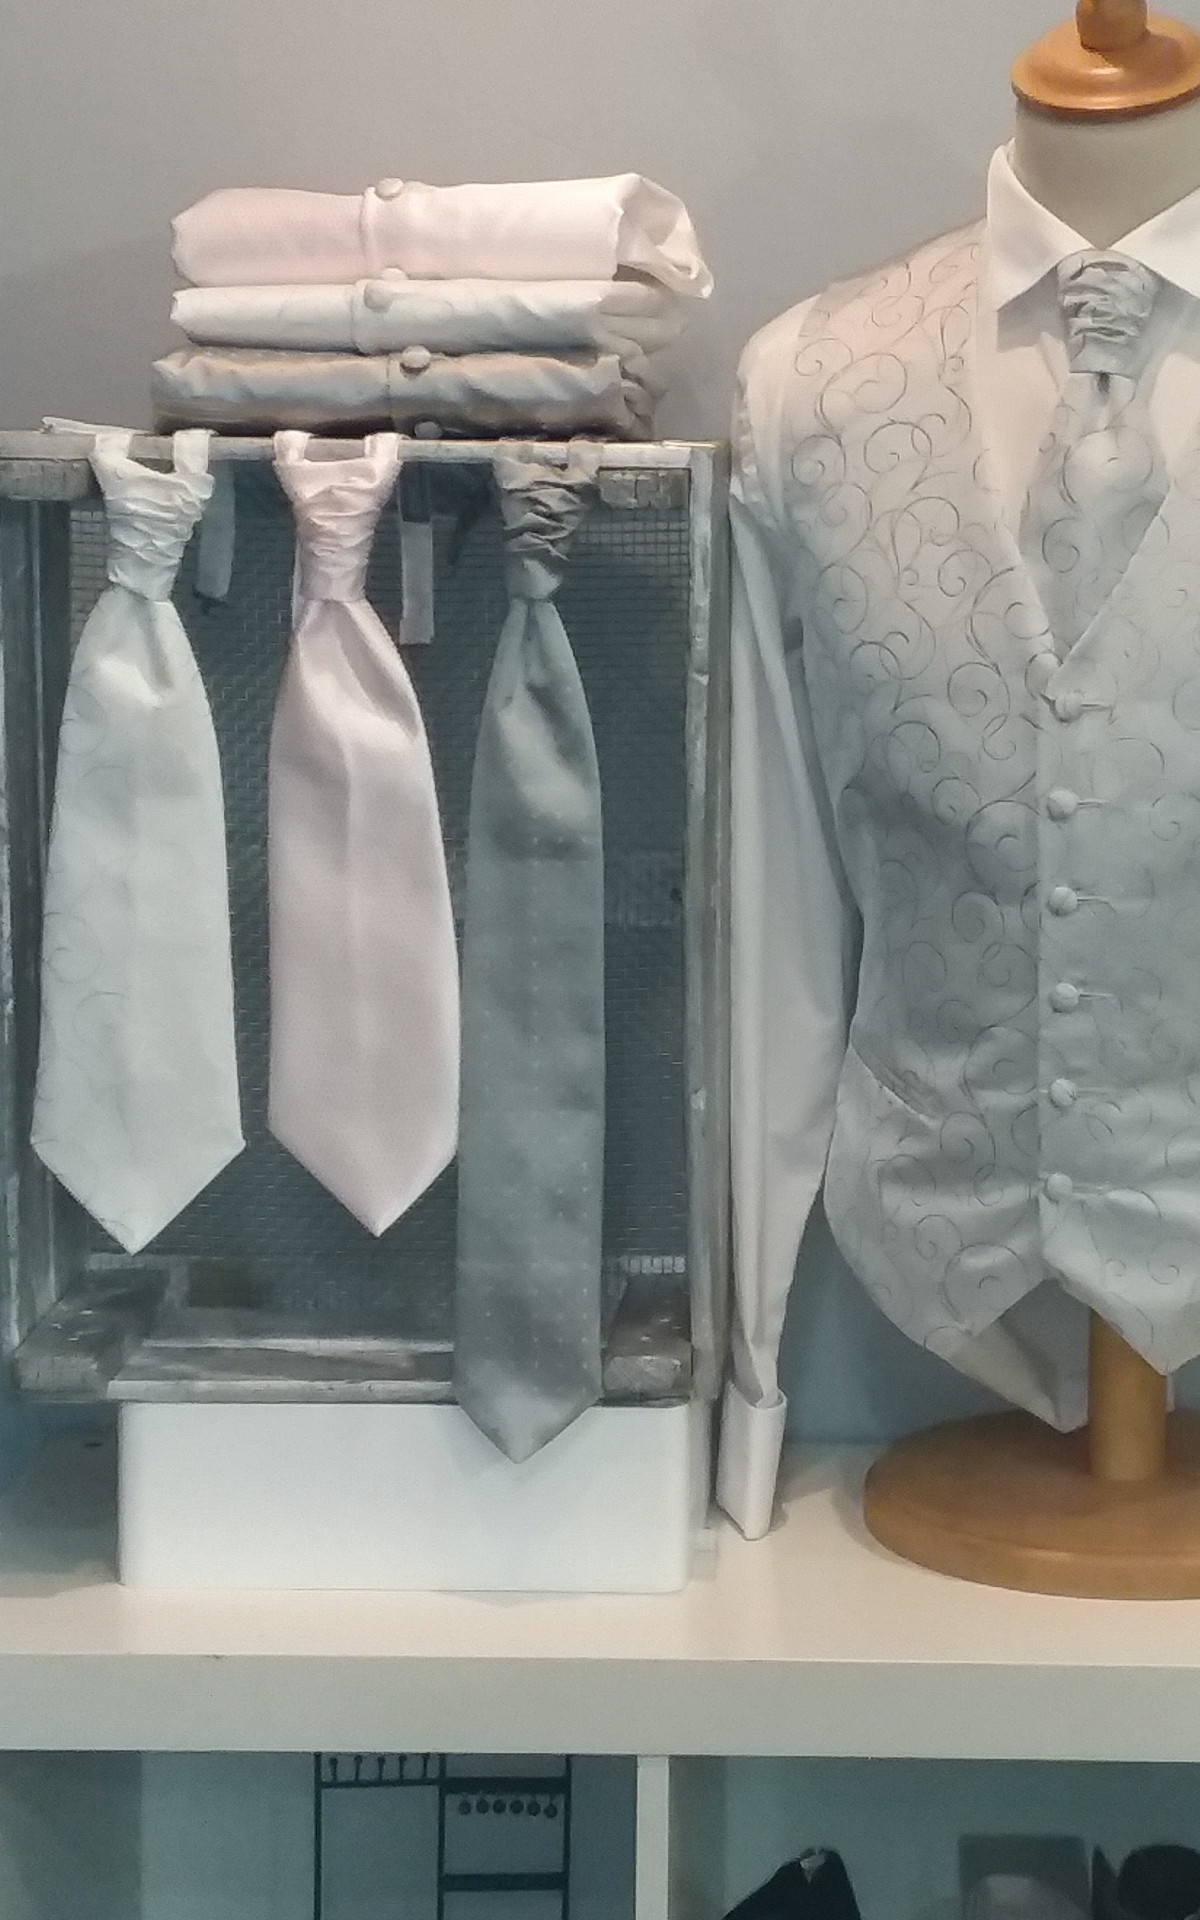 Accessoires Hommes : gilet, cravate, lavallière, noeud papillon, chemise,